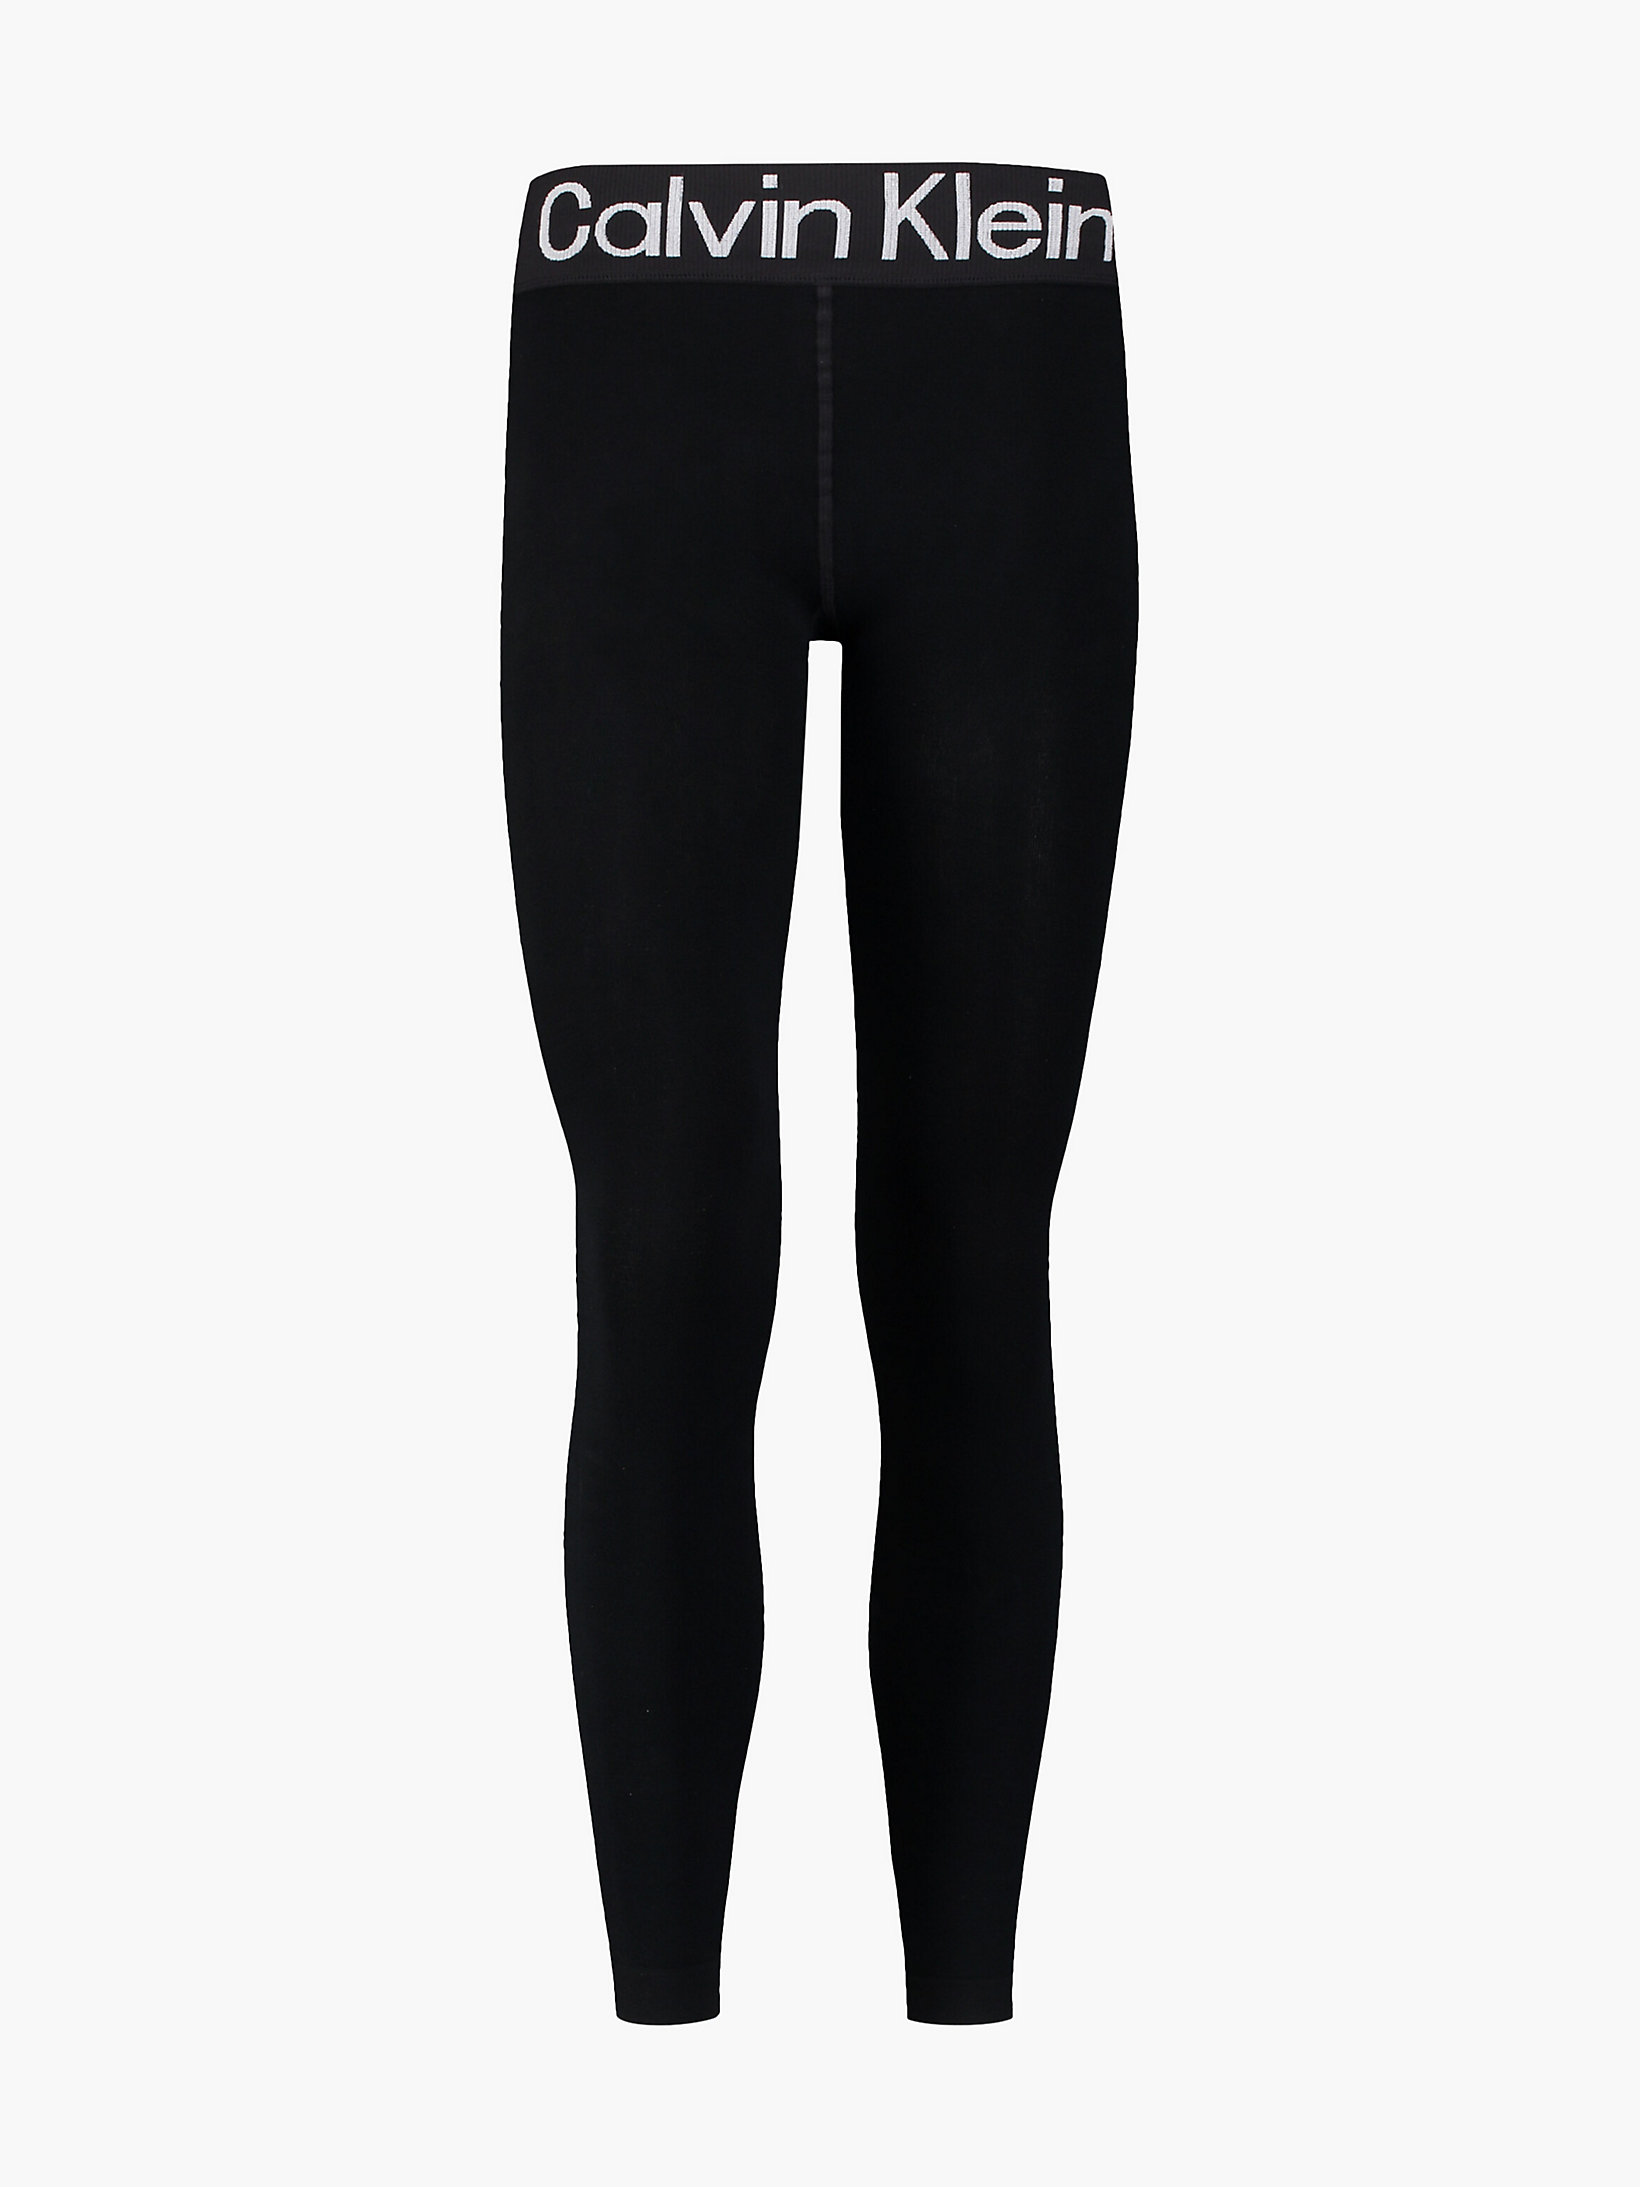 Black Logo Leggings undefined women Calvin Klein